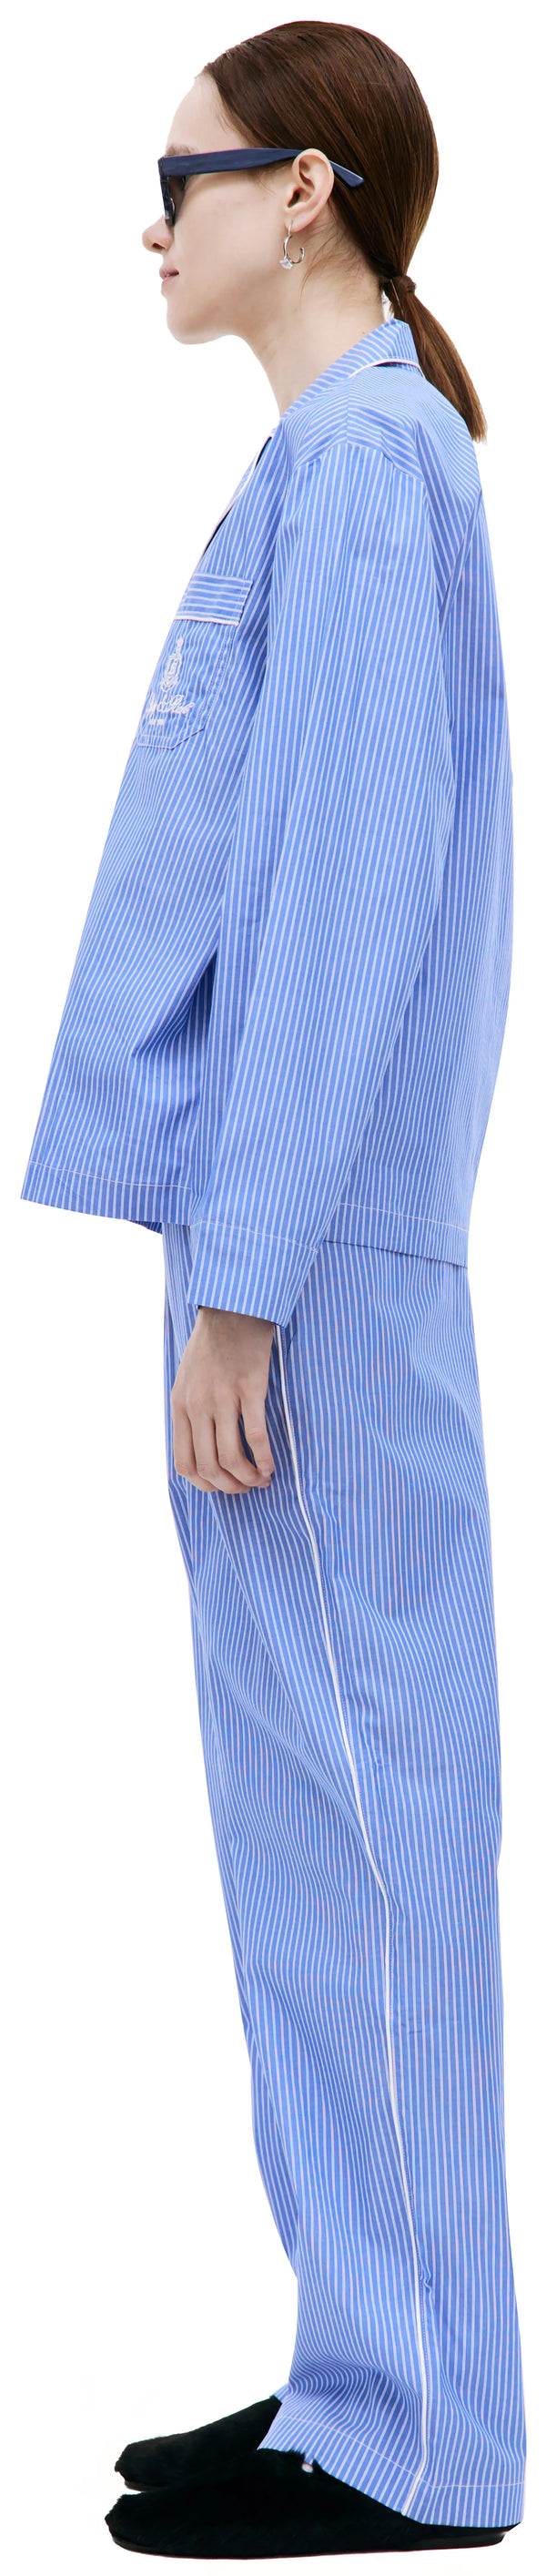 Vendome Pyjama Shirt (Blue Stripped)